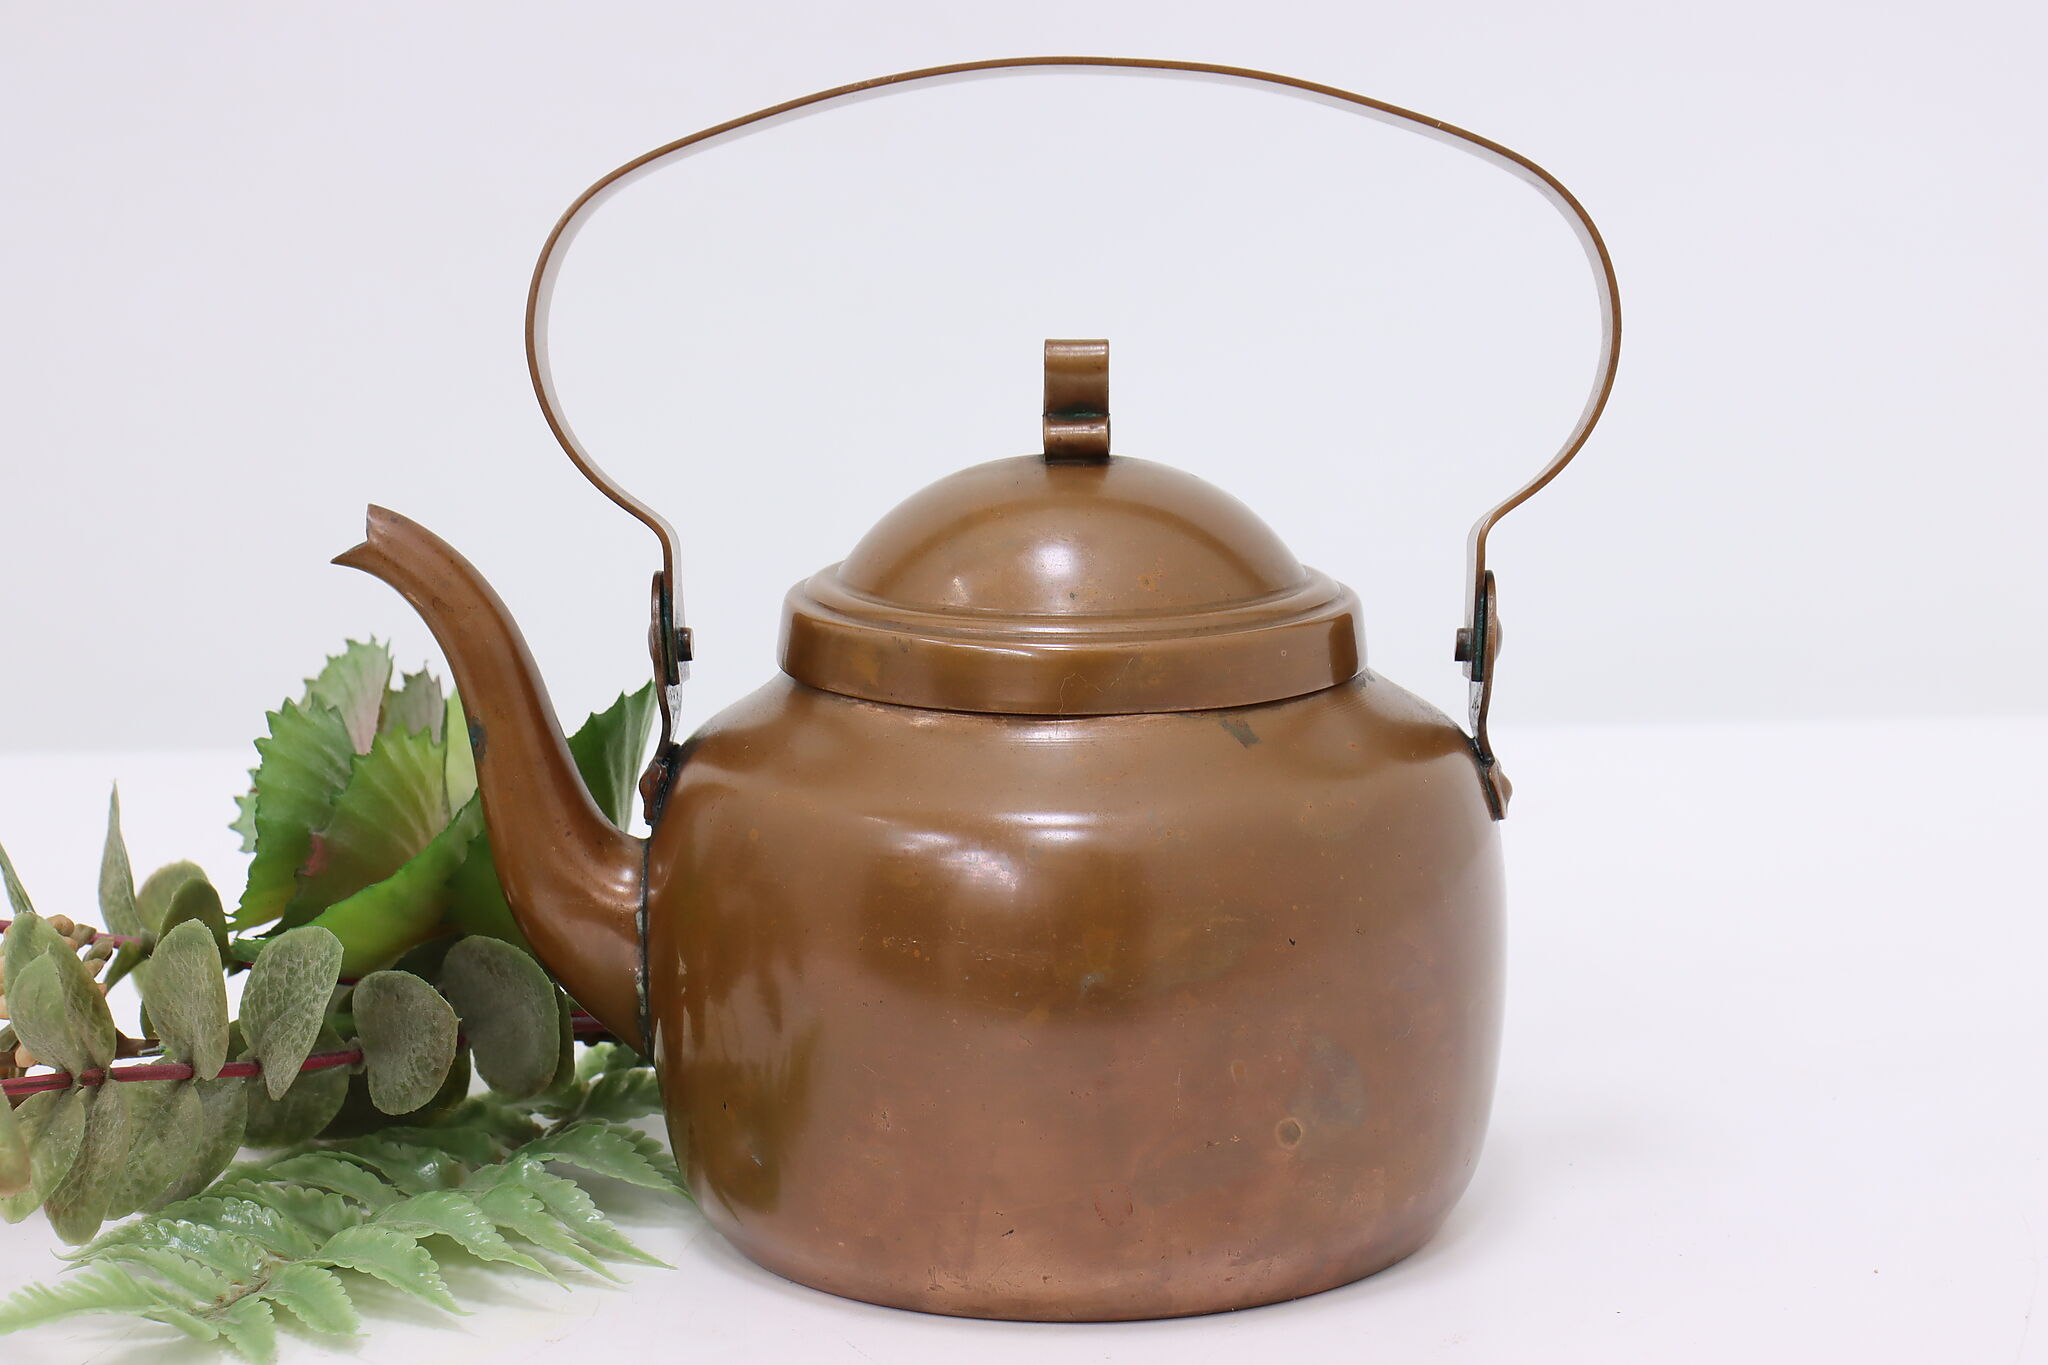  Tea Kettle for Stove Top, Vintage Tea Kettle, Copper